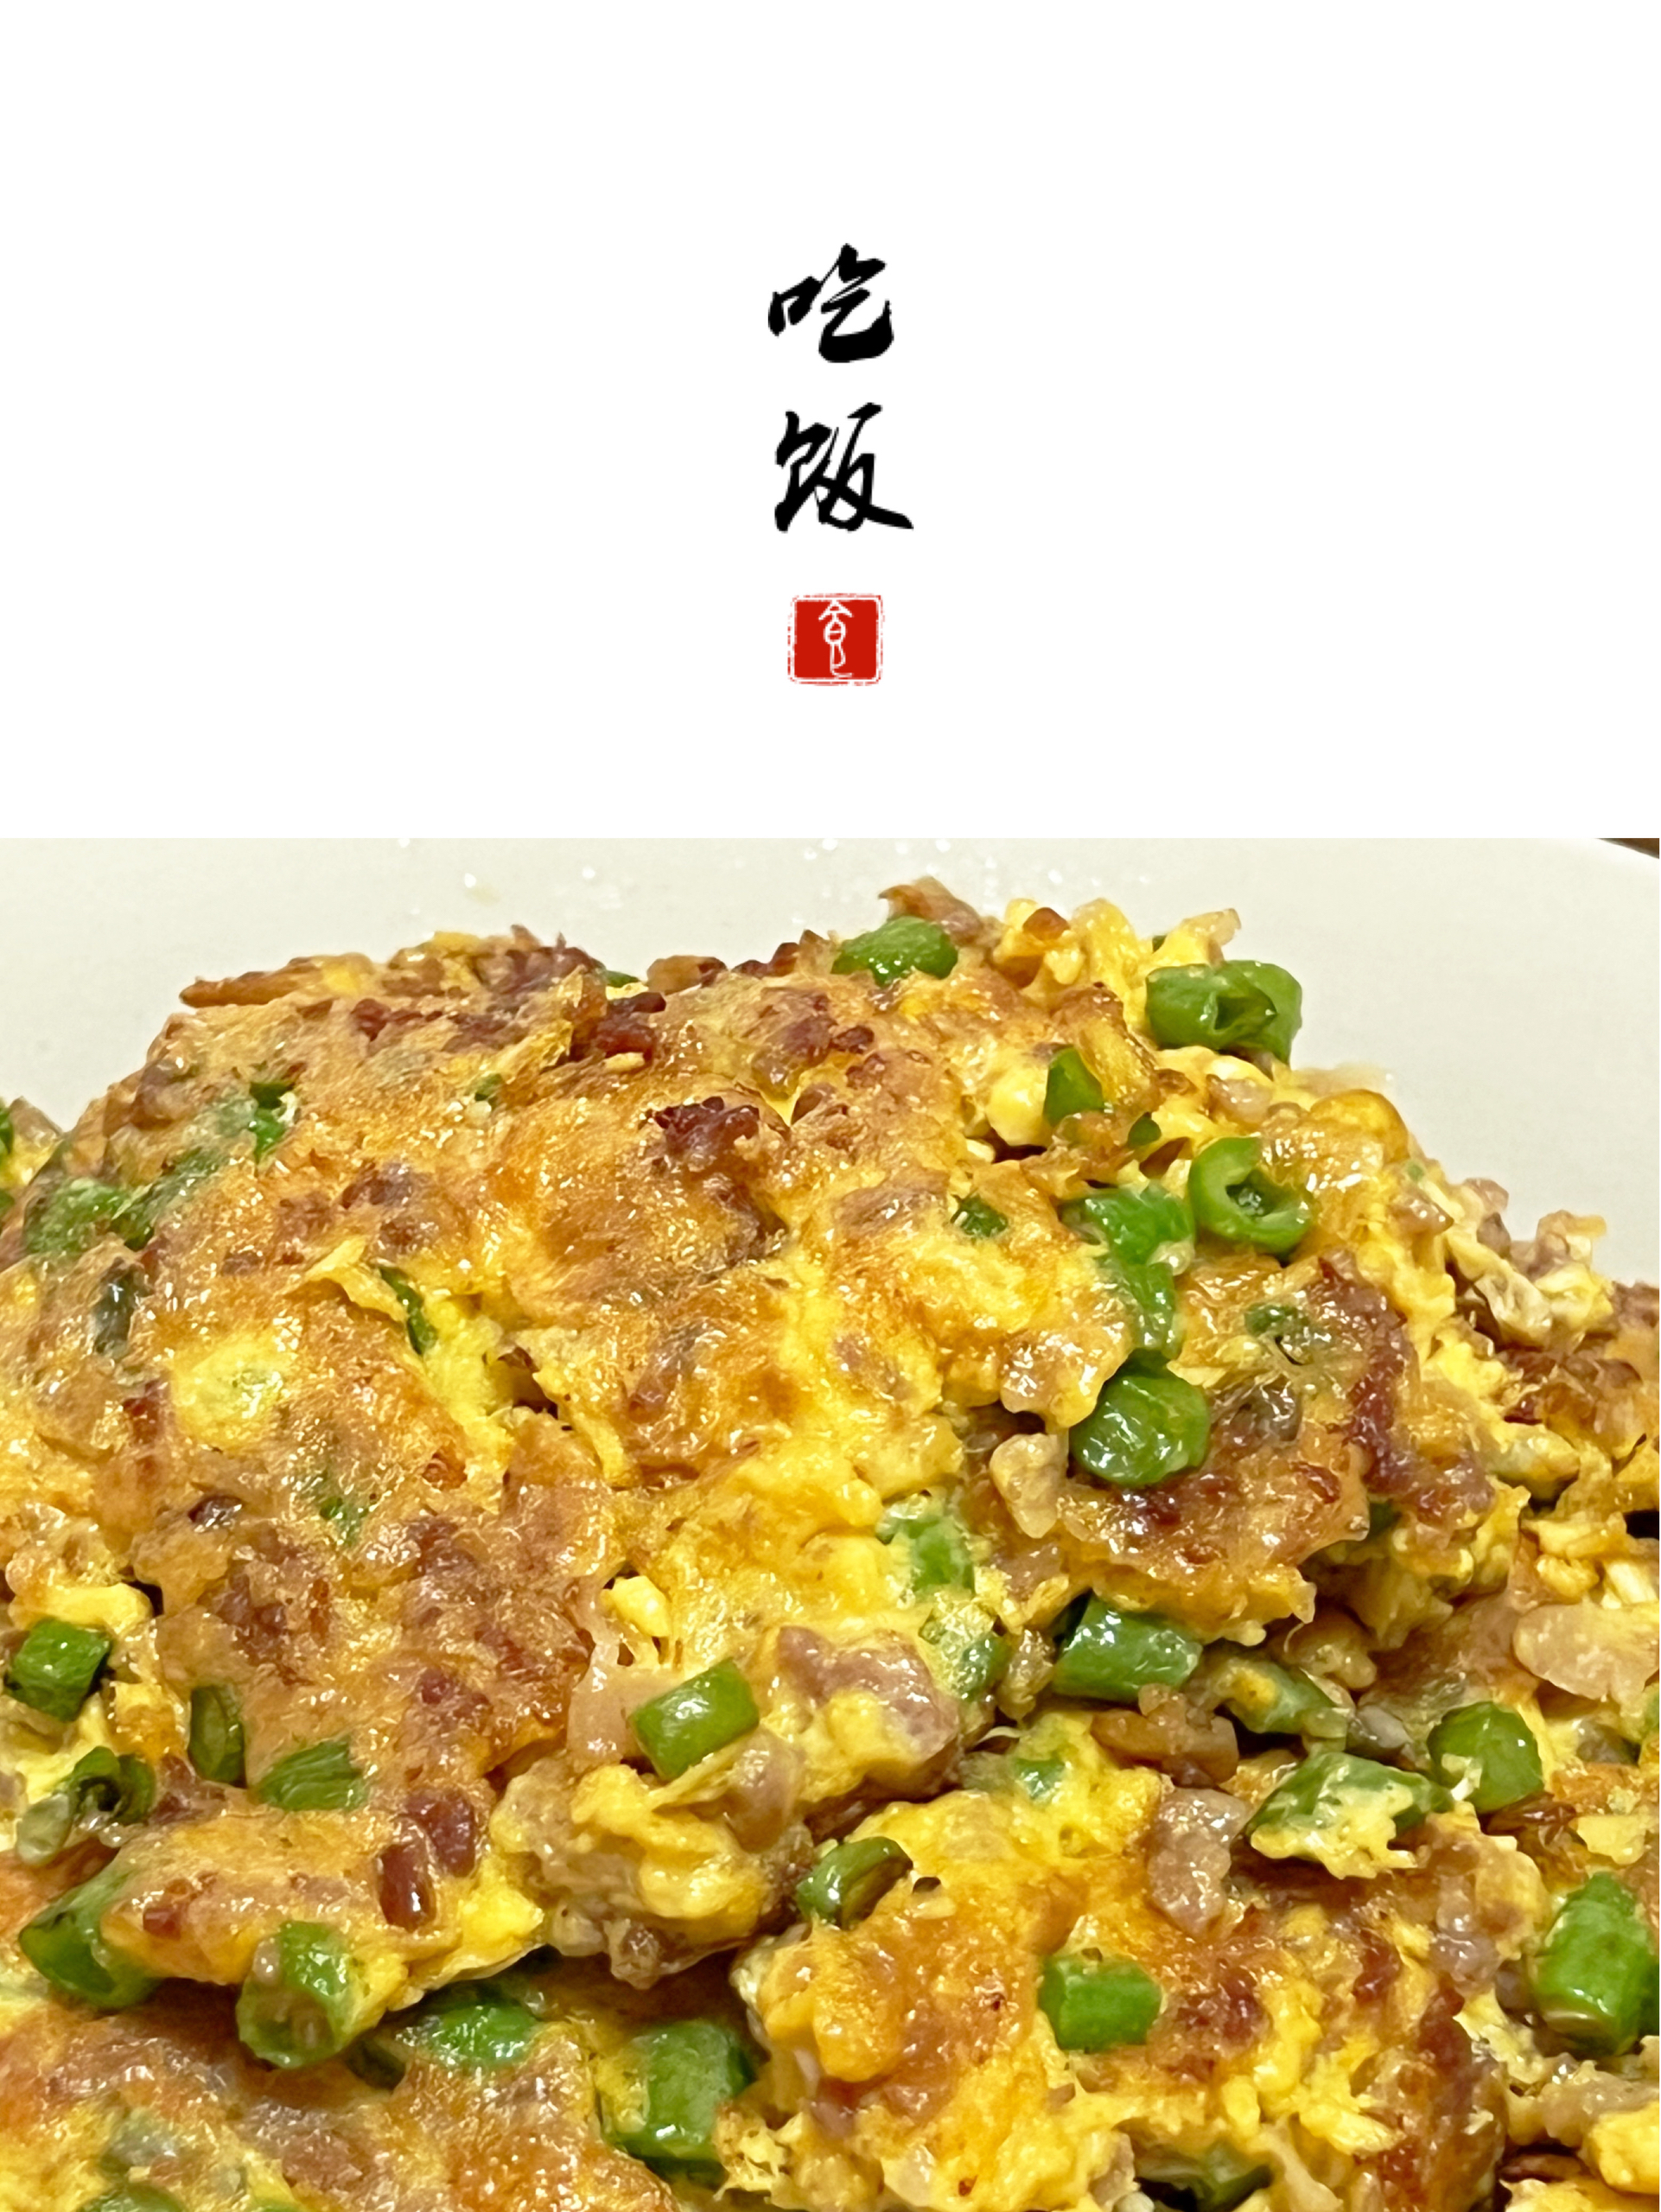 分享100道家常菜丨豆角肉沫煎蛋